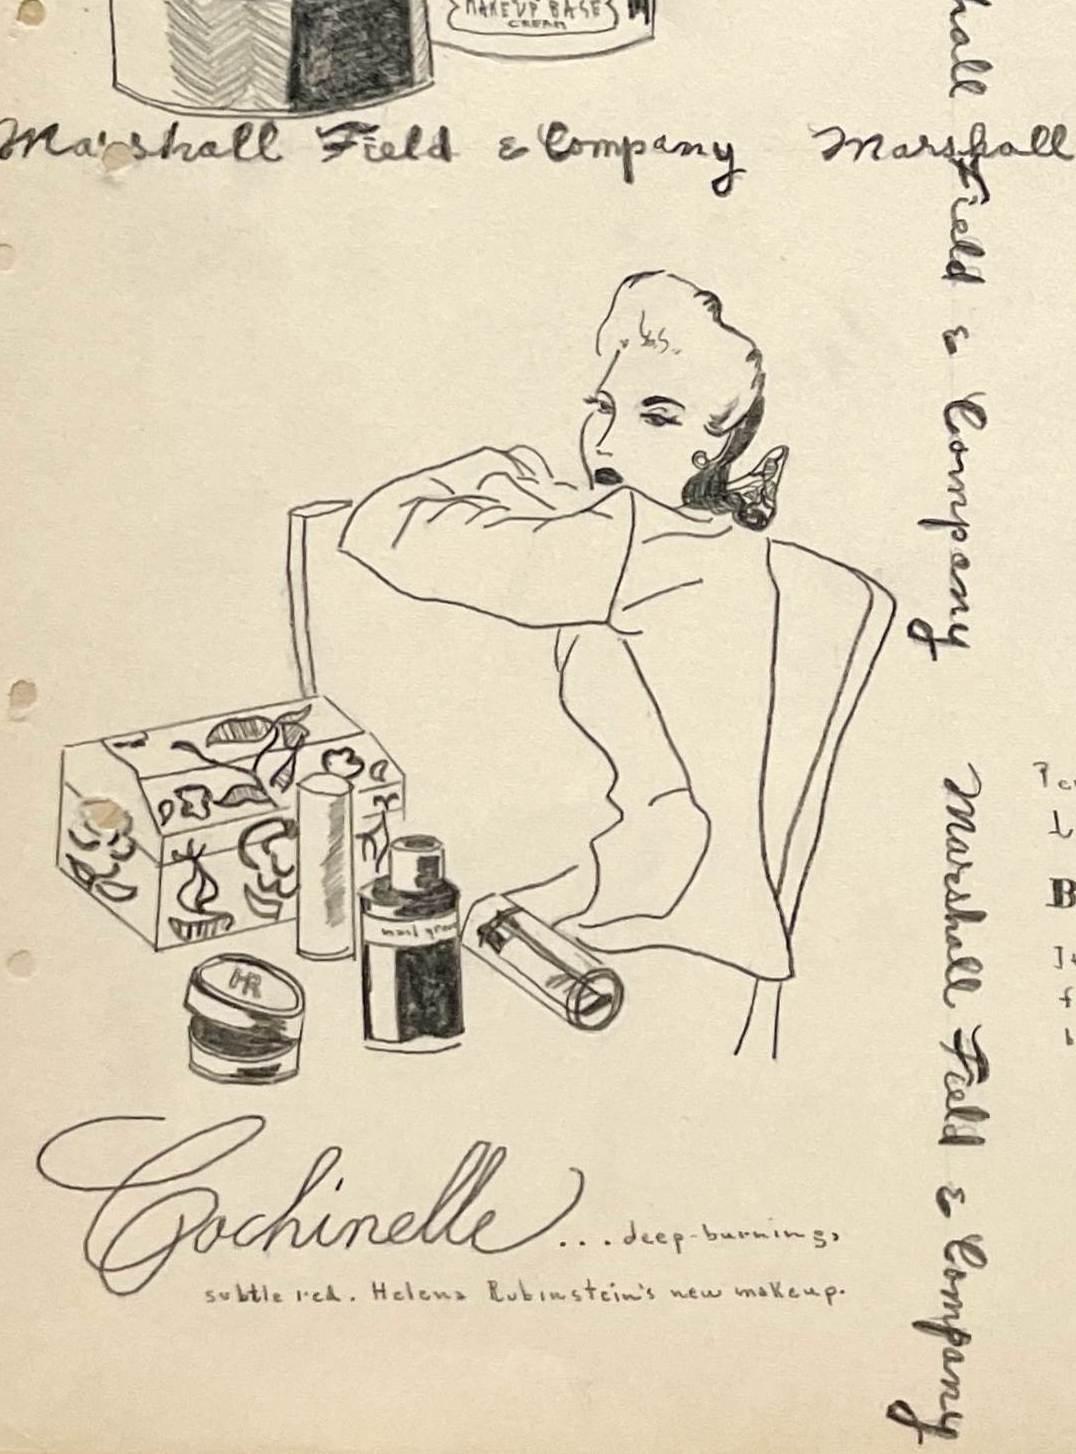 Eine Modestudie aus den frühen 1940er Jahren mit einer Werbung für Marshall Field & Company für Kosmetik und Parfüm.  Provenienz: Cornelia Steckl-Jurin, Gründerin der Modeabteilung an der School of the Art Institute of Chicago. Archivmattiert auf